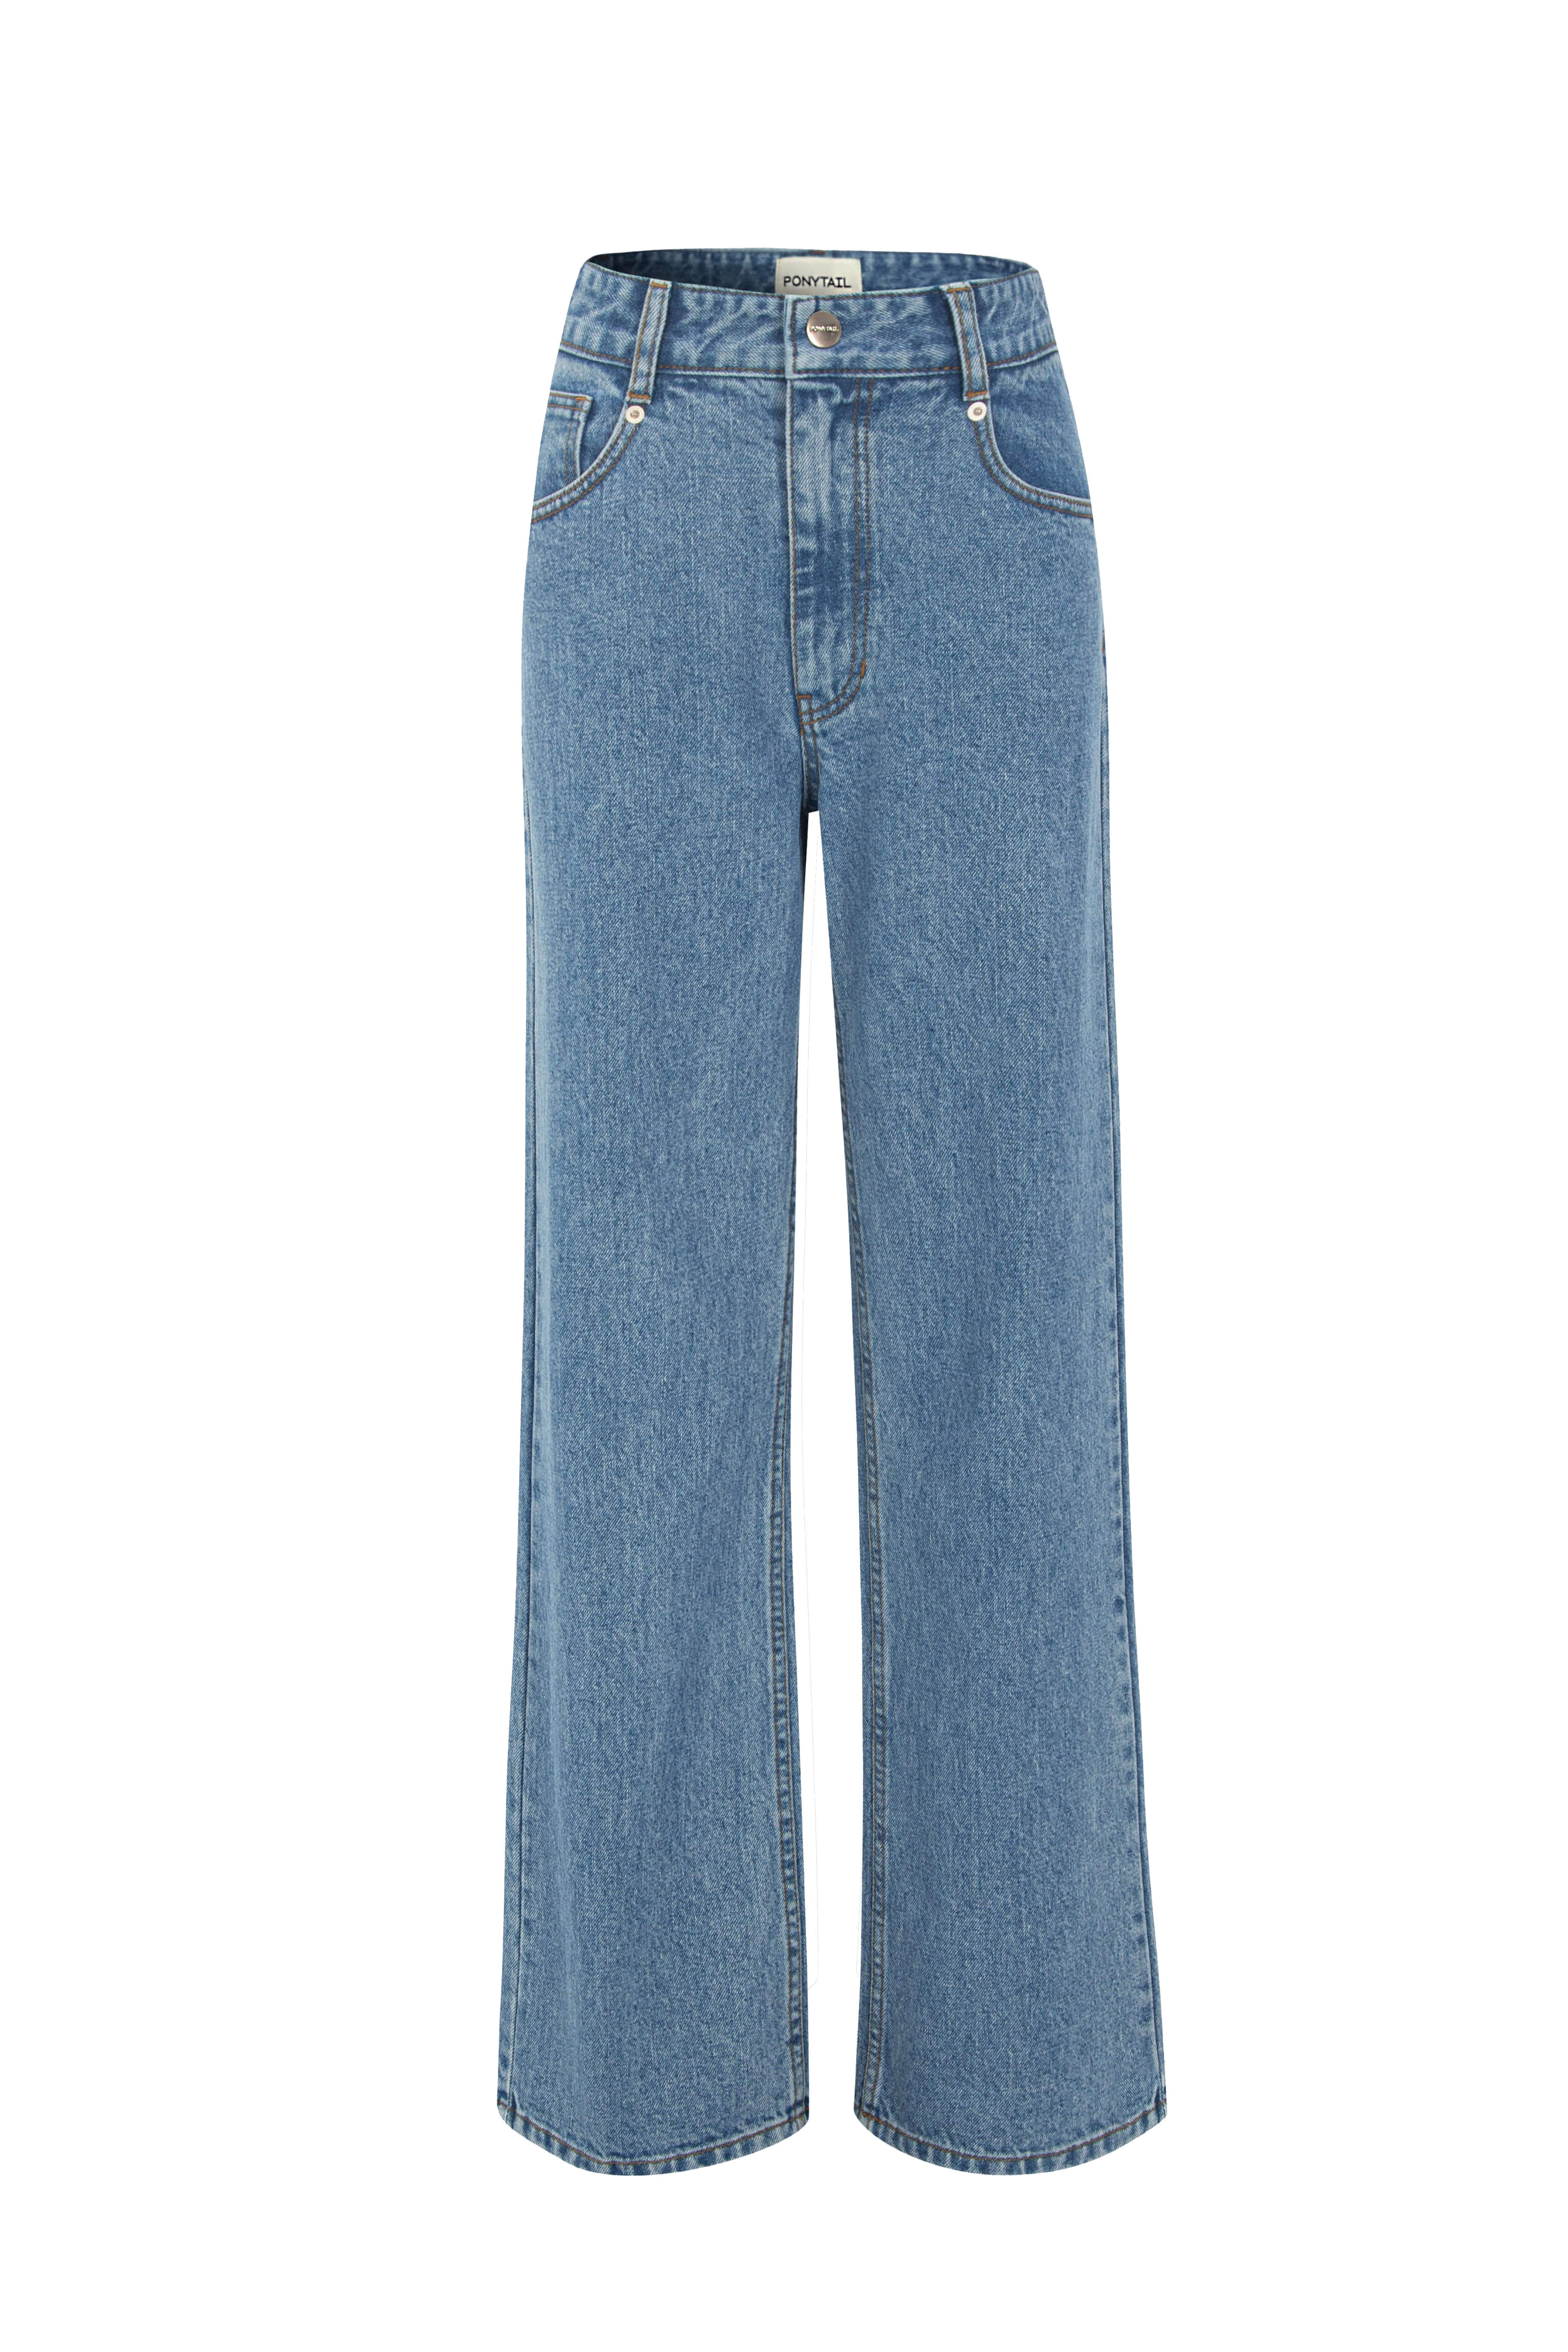 [2차 Pre-Order] BELLA Loose-fit Jeans (Medium Blue) - 포니테일